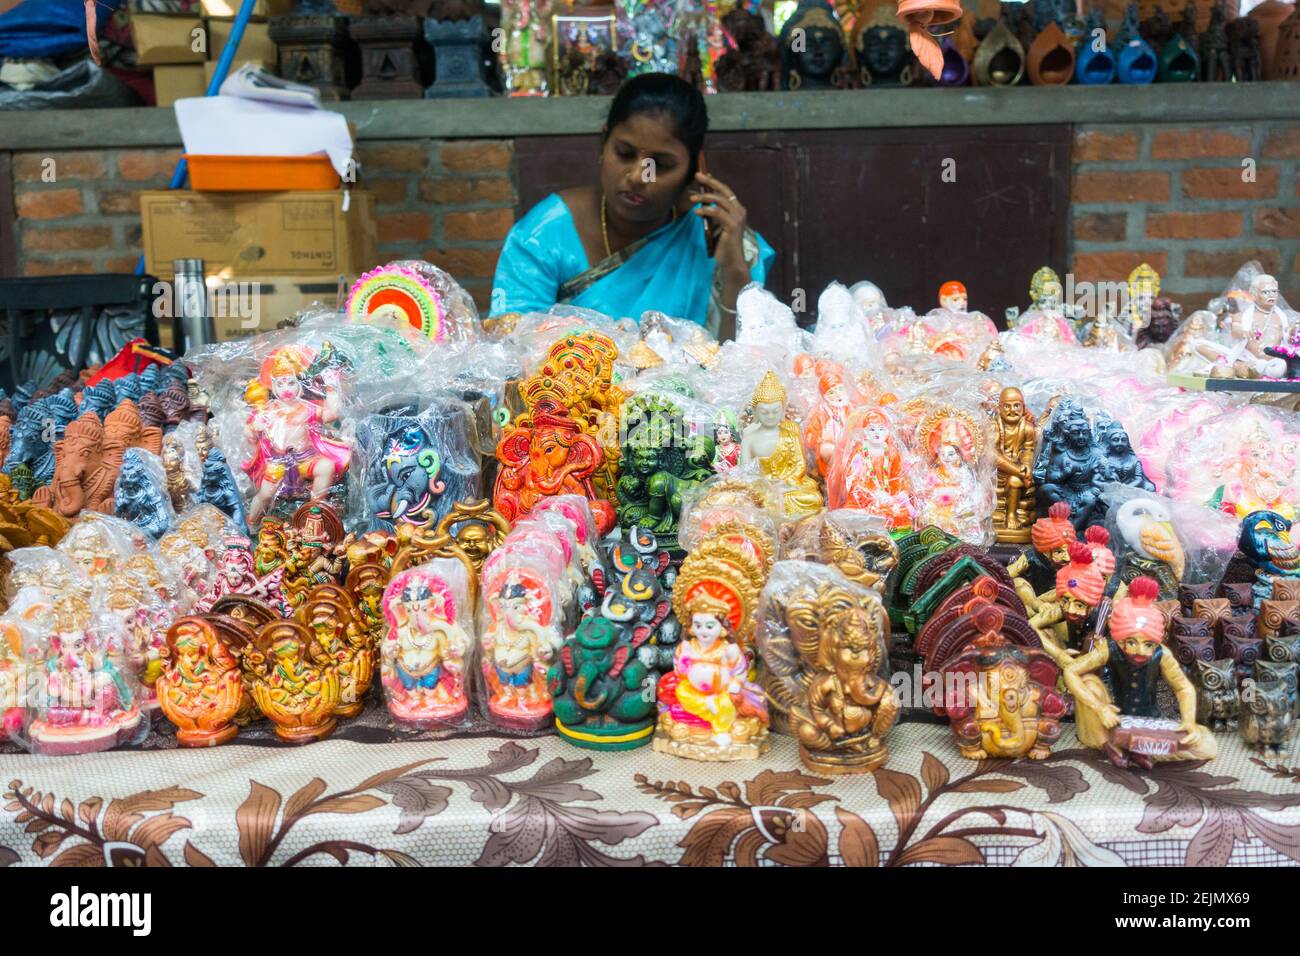 Femme asiatique indienne âgée de 40 ans qui vend des idoles hindouistes artisanales à Chennai, Tamil nadu, Inde Banque D'Images